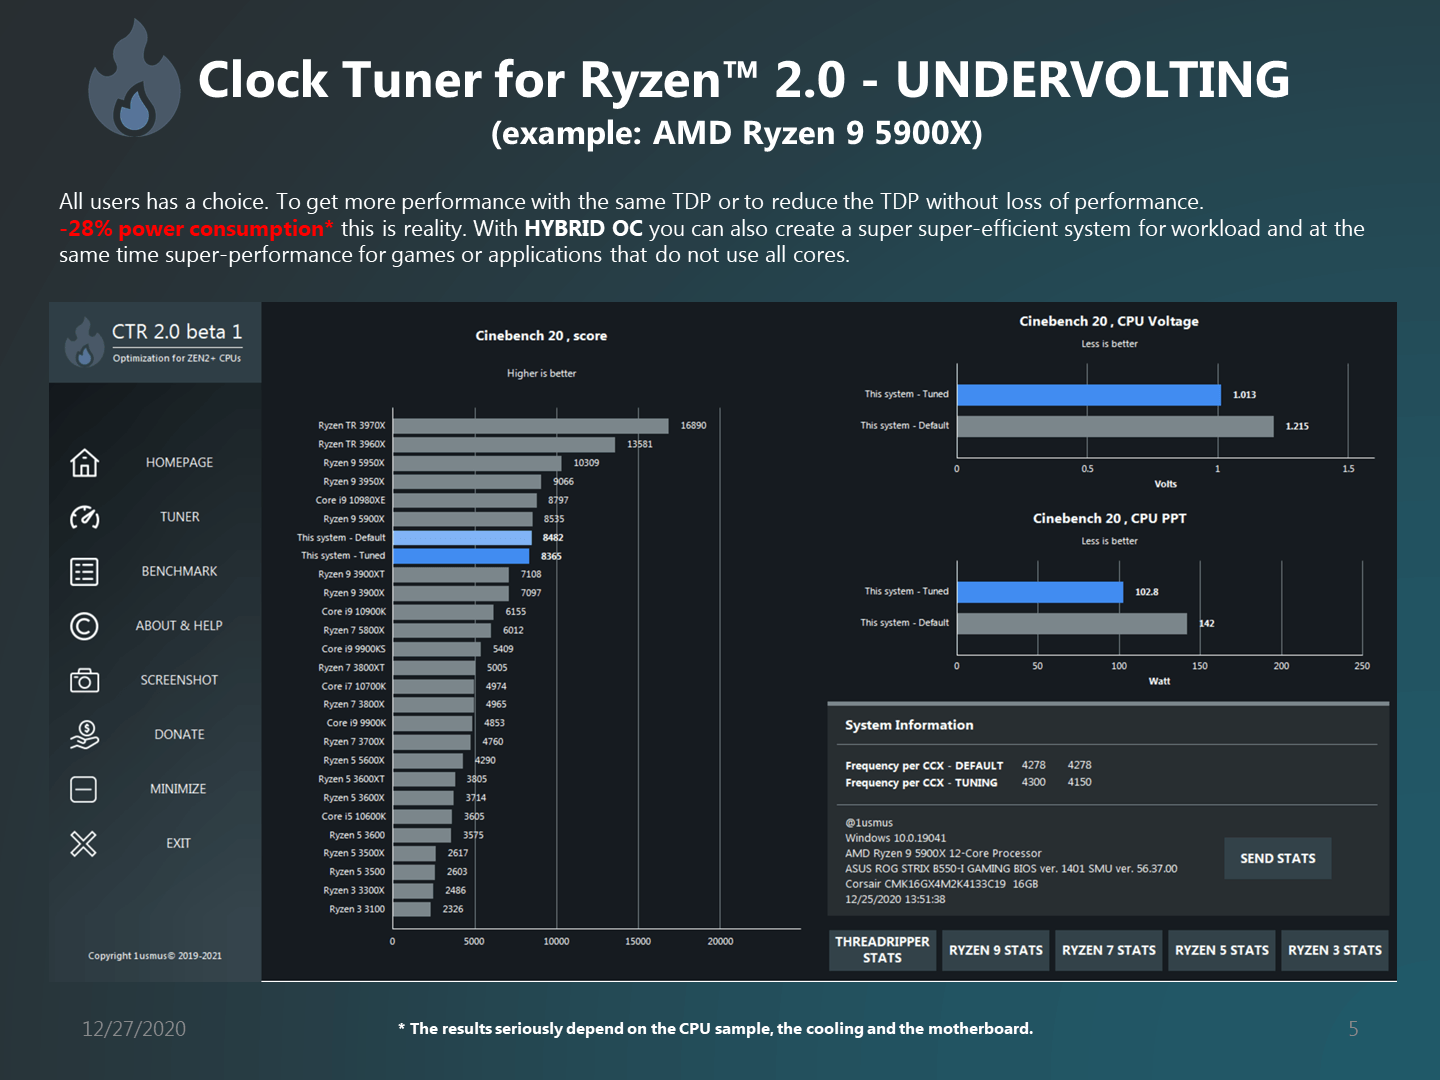 Clock-Tuner-For-Ryzen-2.0-6.png